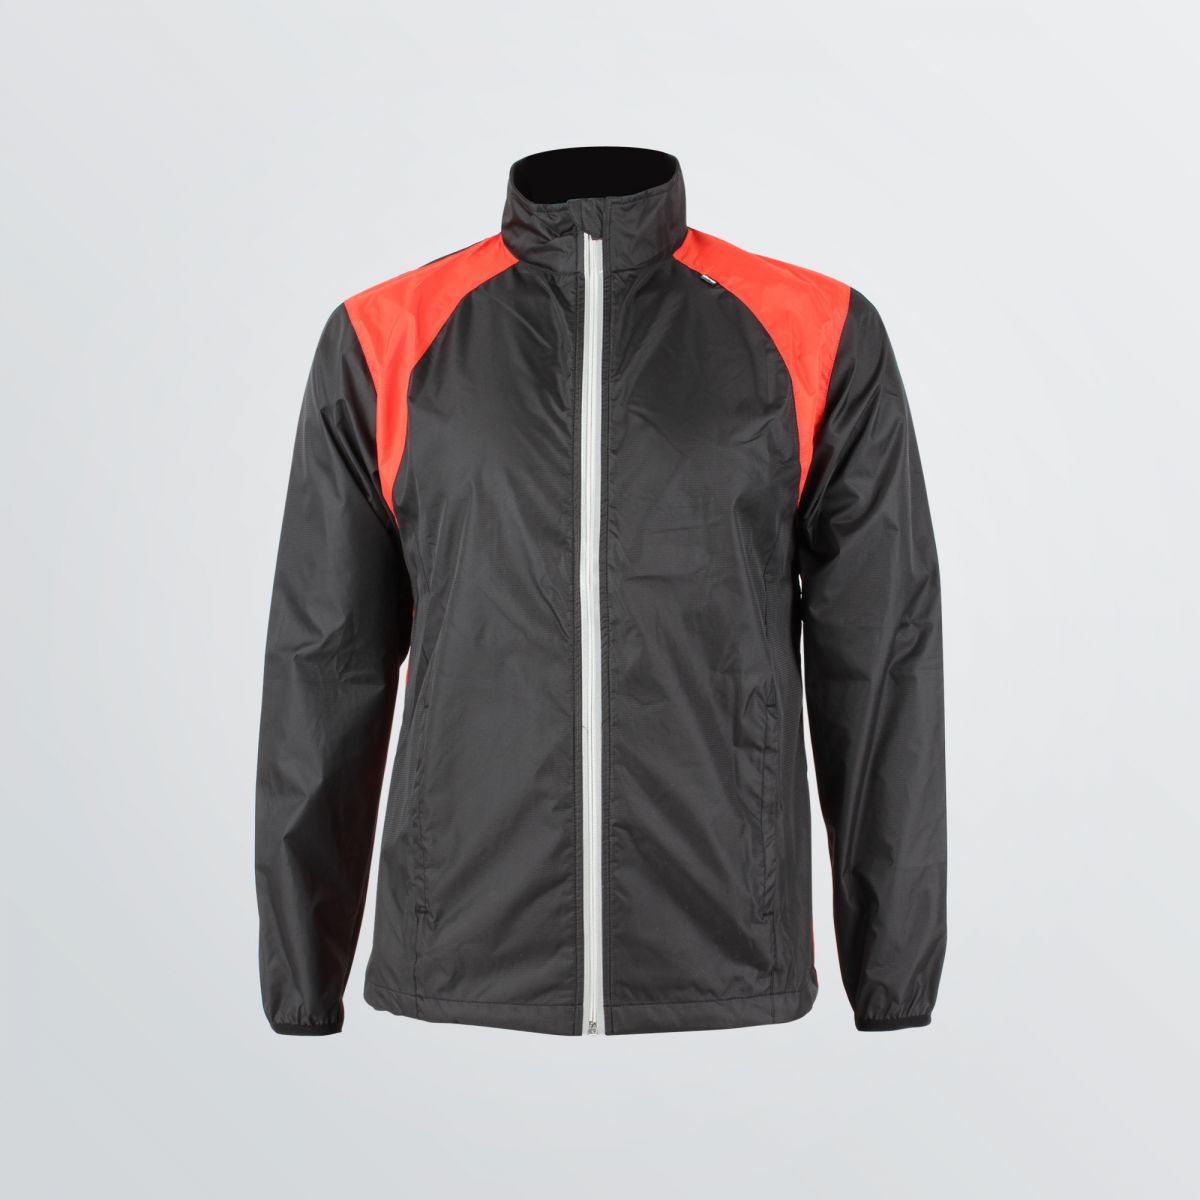 Zweifarbige Cross Sport Jacket aus windabeweisendem Funktionsmaterial zum Individualisieren abgebildet als Produktbeispiel in schwarz-rot